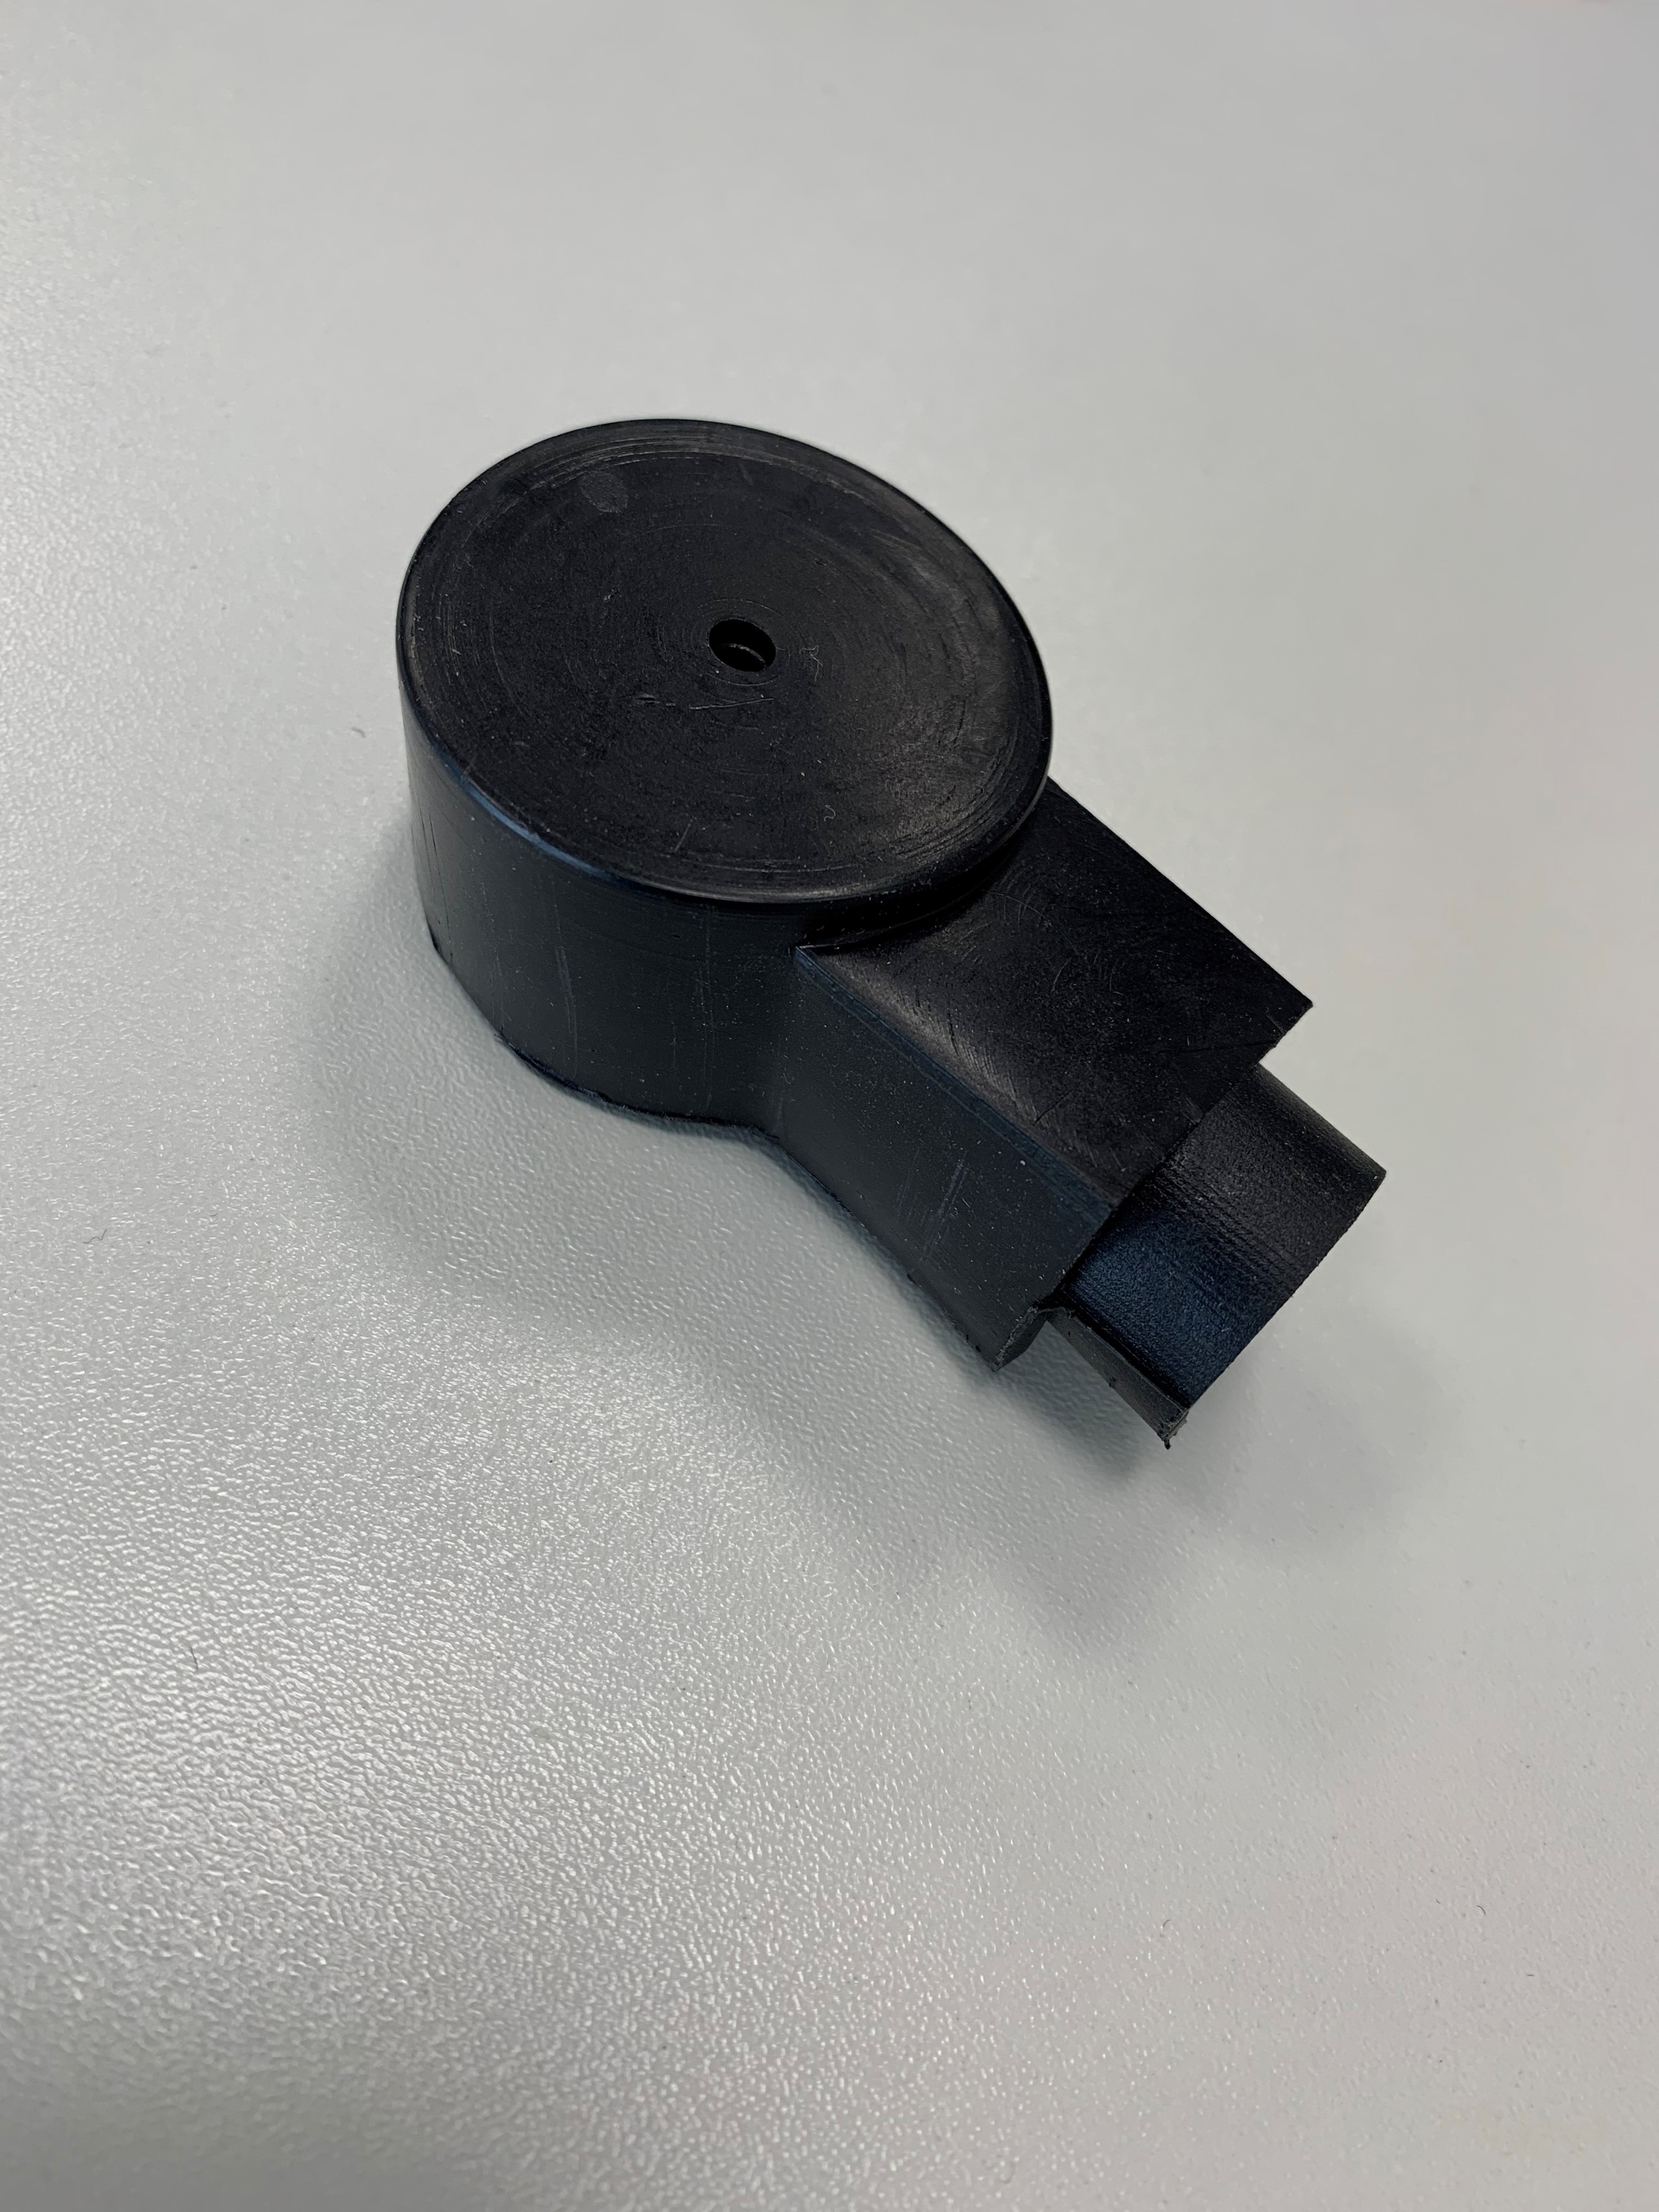 Polkappe schwarz für Kabelquerschnitte 50-70mm²